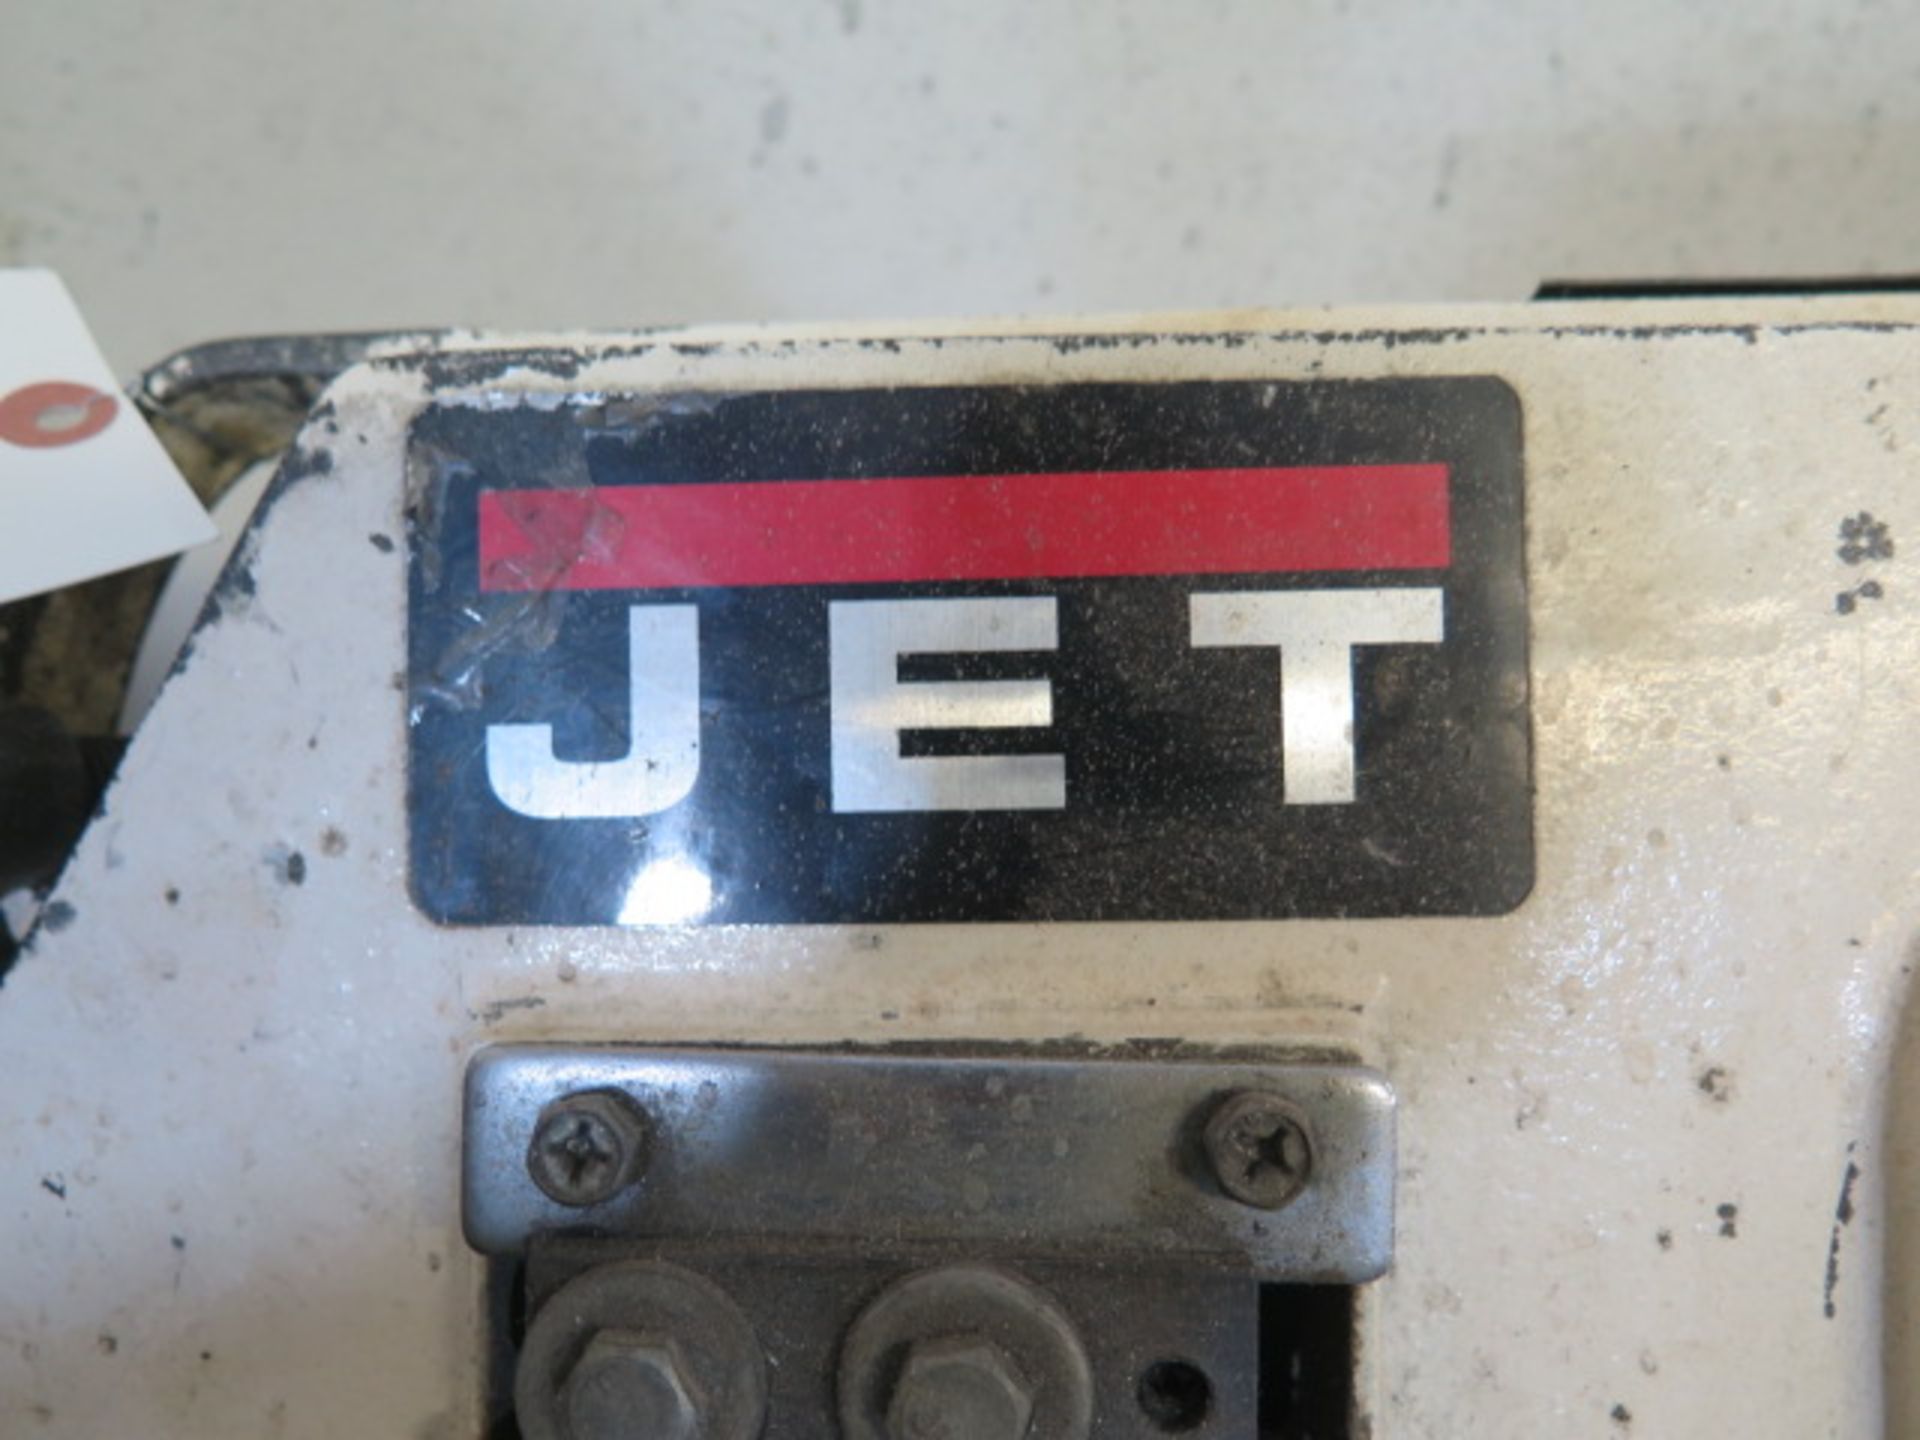 Jet 4" Metal Cutting BHorizontalBand Saw w/ Manual Clamping, Work Stop - Image 4 of 4